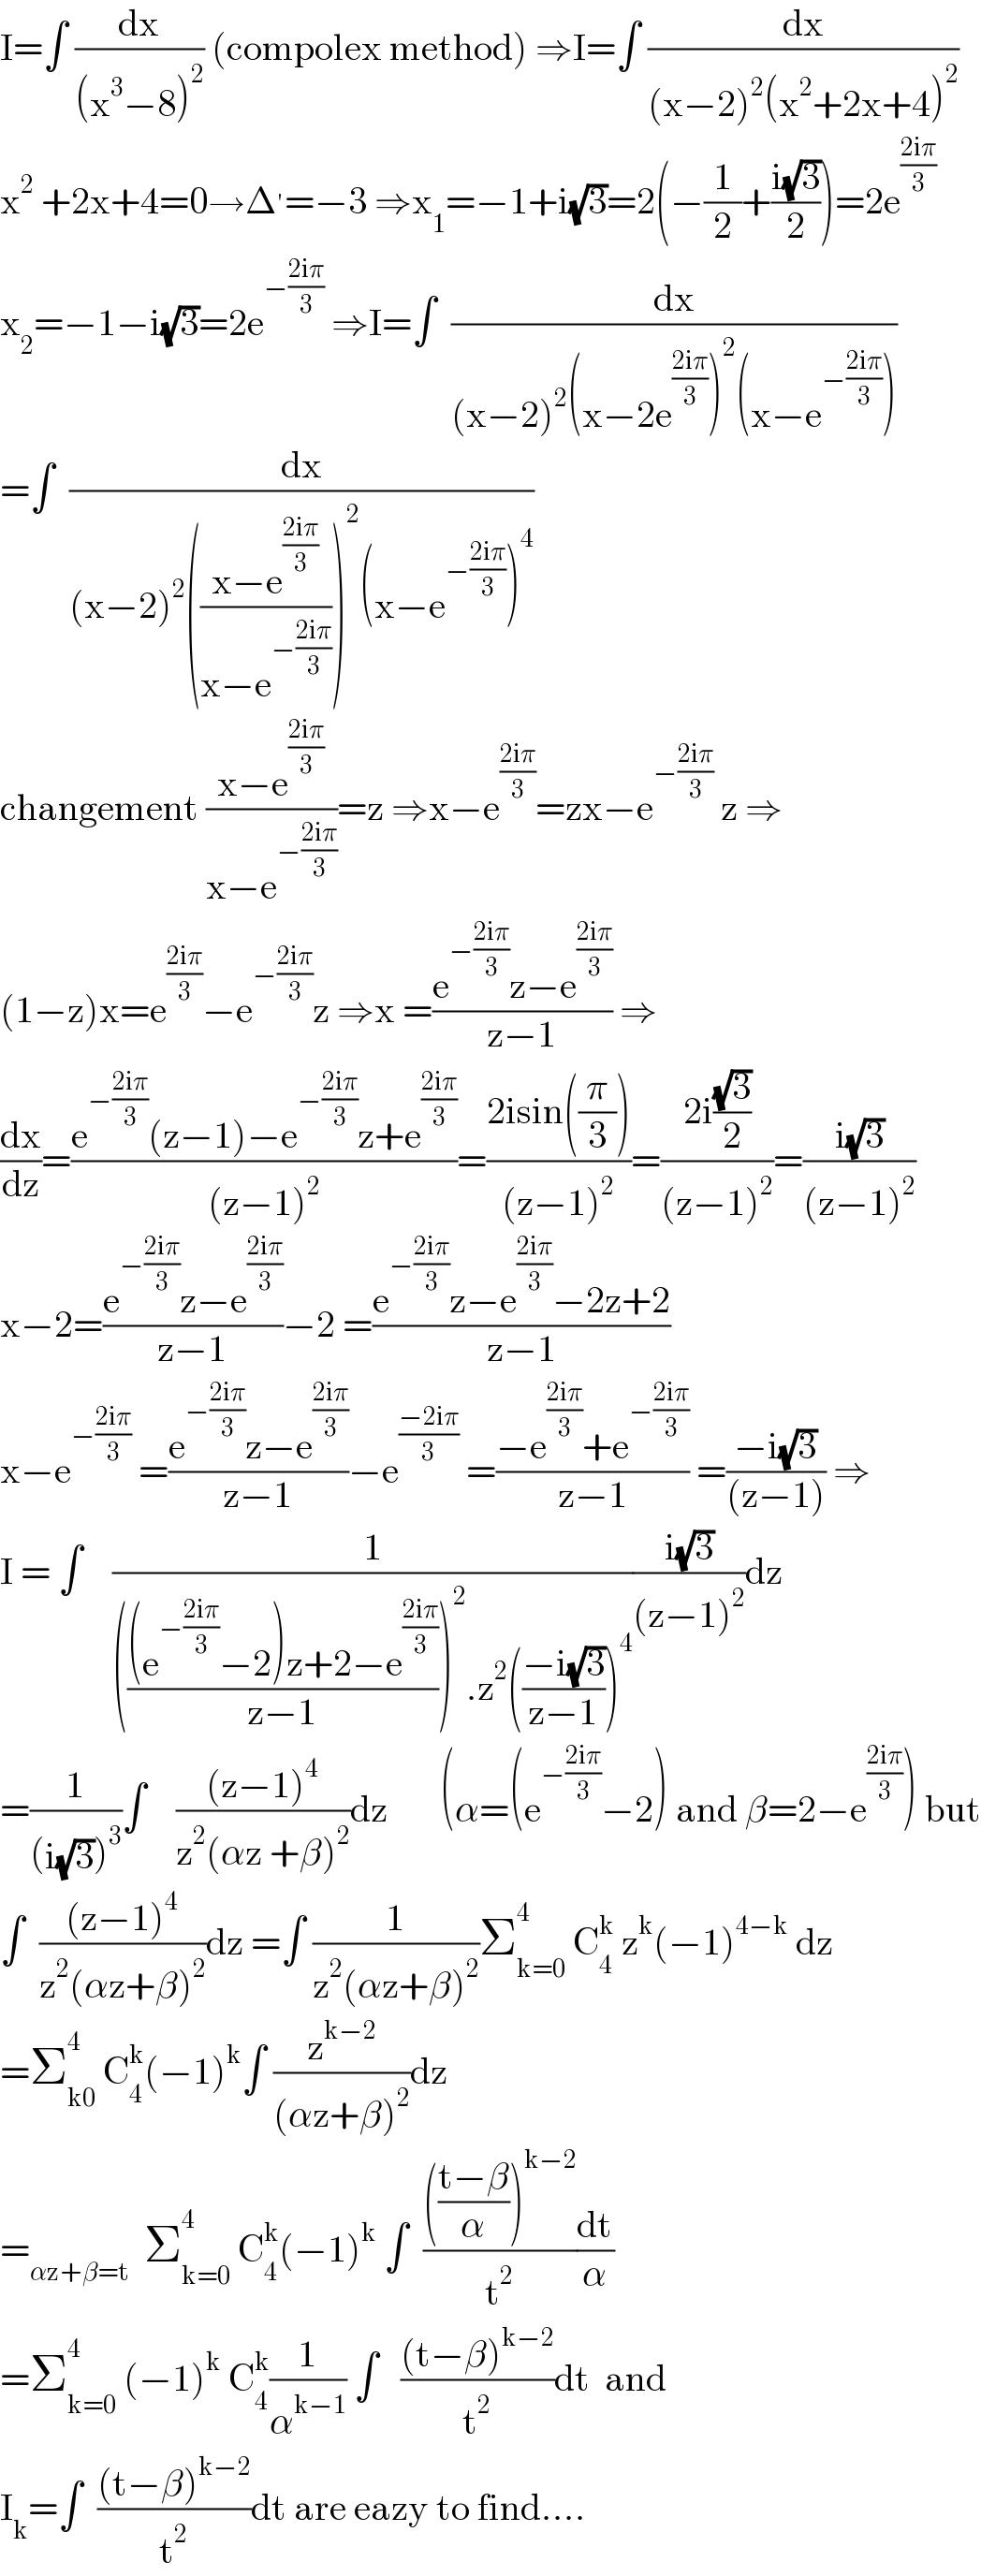 I=∫ (dx/((x^3 −8)^2 )) (compolex method) ⇒I=∫ (dx/((x−2)^2 (x^2 +2x+4)^2 ))  x^2  +2x+4=0→Δ^′ =−3 ⇒x_1 =−1+i(√3)=2(−(1/2)+((i(√3))/2))=2e^((2iπ)/3)   x_2 =−1−i(√3)=2e^(−((2iπ)/3))  ⇒I=∫  (dx/((x−2)^2 (x−2e^((2iπ)/3) )^2 (x−e^(−((2iπ)/3)) )))  =∫  (dx/((x−2)^2 (((x−e^((2iπ)/3) )/(x−e^(−((2iπ)/3)) )))^2 (x−e^(−((2iπ)/3)) )^4 ))  changement ((x−e^((2iπ)/3) )/(x−e^(−((2iπ)/3)) ))=z ⇒x−e^((2iπ)/3) =zx−e^(−((2iπ)/3))  z ⇒  (1−z)x=e^((2iπ)/3) −e^(−((2iπ)/3)) z ⇒x =((e^(−((2iπ)/3)) z−e^((2iπ)/3) )/(z−1)) ⇒  (dx/dz)=((e^(−((2iπ)/3)) (z−1)−e^(−((2iπ)/3)) z+e^((2iπ)/3) )/((z−1)^2 ))=((2isin((π/3)))/((z−1)^2 ))=((2i((√3)/2))/((z−1)^2 ))=((i(√3))/((z−1)^2 ))  x−2=((e^(−((2iπ)/3)) z−e^((2iπ)/3) )/(z−1))−2 =((e^(−((2iπ)/3)) z−e^((2iπ)/3) −2z+2)/(z−1))  x−e^(−((2iπ)/3))  =((e^(−((2iπ)/3)) z−e^((2iπ)/3) )/(z−1))−e^((−2iπ)/3)  =((−e^((2iπ)/3) +e^(−((2iπ)/3)) )/(z−1)) =((−i(√3))/((z−1))) ⇒  I = ∫    (1/(((((e^(−((2iπ)/3)) −2)z+2−e^((2iπ)/3) )/(z−1)))^2 .z^2 (((−i(√3))/(z−1)))^4 ))((i(√3))/((z−1)^2 ))dz  =(1/((i(√3))^3 ))∫    (((z−1)^4 )/(z^2 (αz +β)^2 ))dz       (α=(e^(−((2iπ)/3)) −2) and β=2−e^((2iπ)/3) ) but  ∫  (((z−1)^4 )/(z^2 (αz+β)^2 ))dz =∫ (1/(z^2 (αz+β)^2 ))Σ_(k=0) ^4  C_4 ^k  z^k (−1)^(4−k)  dz  =Σ_(k0) ^4  C_4 ^k (−1)^k ∫ (z^(k−2) /((αz+β)^2 ))dz  =_(αz+β=t)   Σ_(k=0) ^4  C_4 ^k (−1)^k  ∫  (((((t−β)/α))^(k−2) )/t^2 )(dt/α)  =Σ_(k=0) ^4  (−1)^k  C_4 ^k (1/α^(k−1) ) ∫   (((t−β)^(k−2) )/t^2 )dt  and  I_k =∫  (((t−β)^(k−2) )/t^2 )dt are eazy to find....  